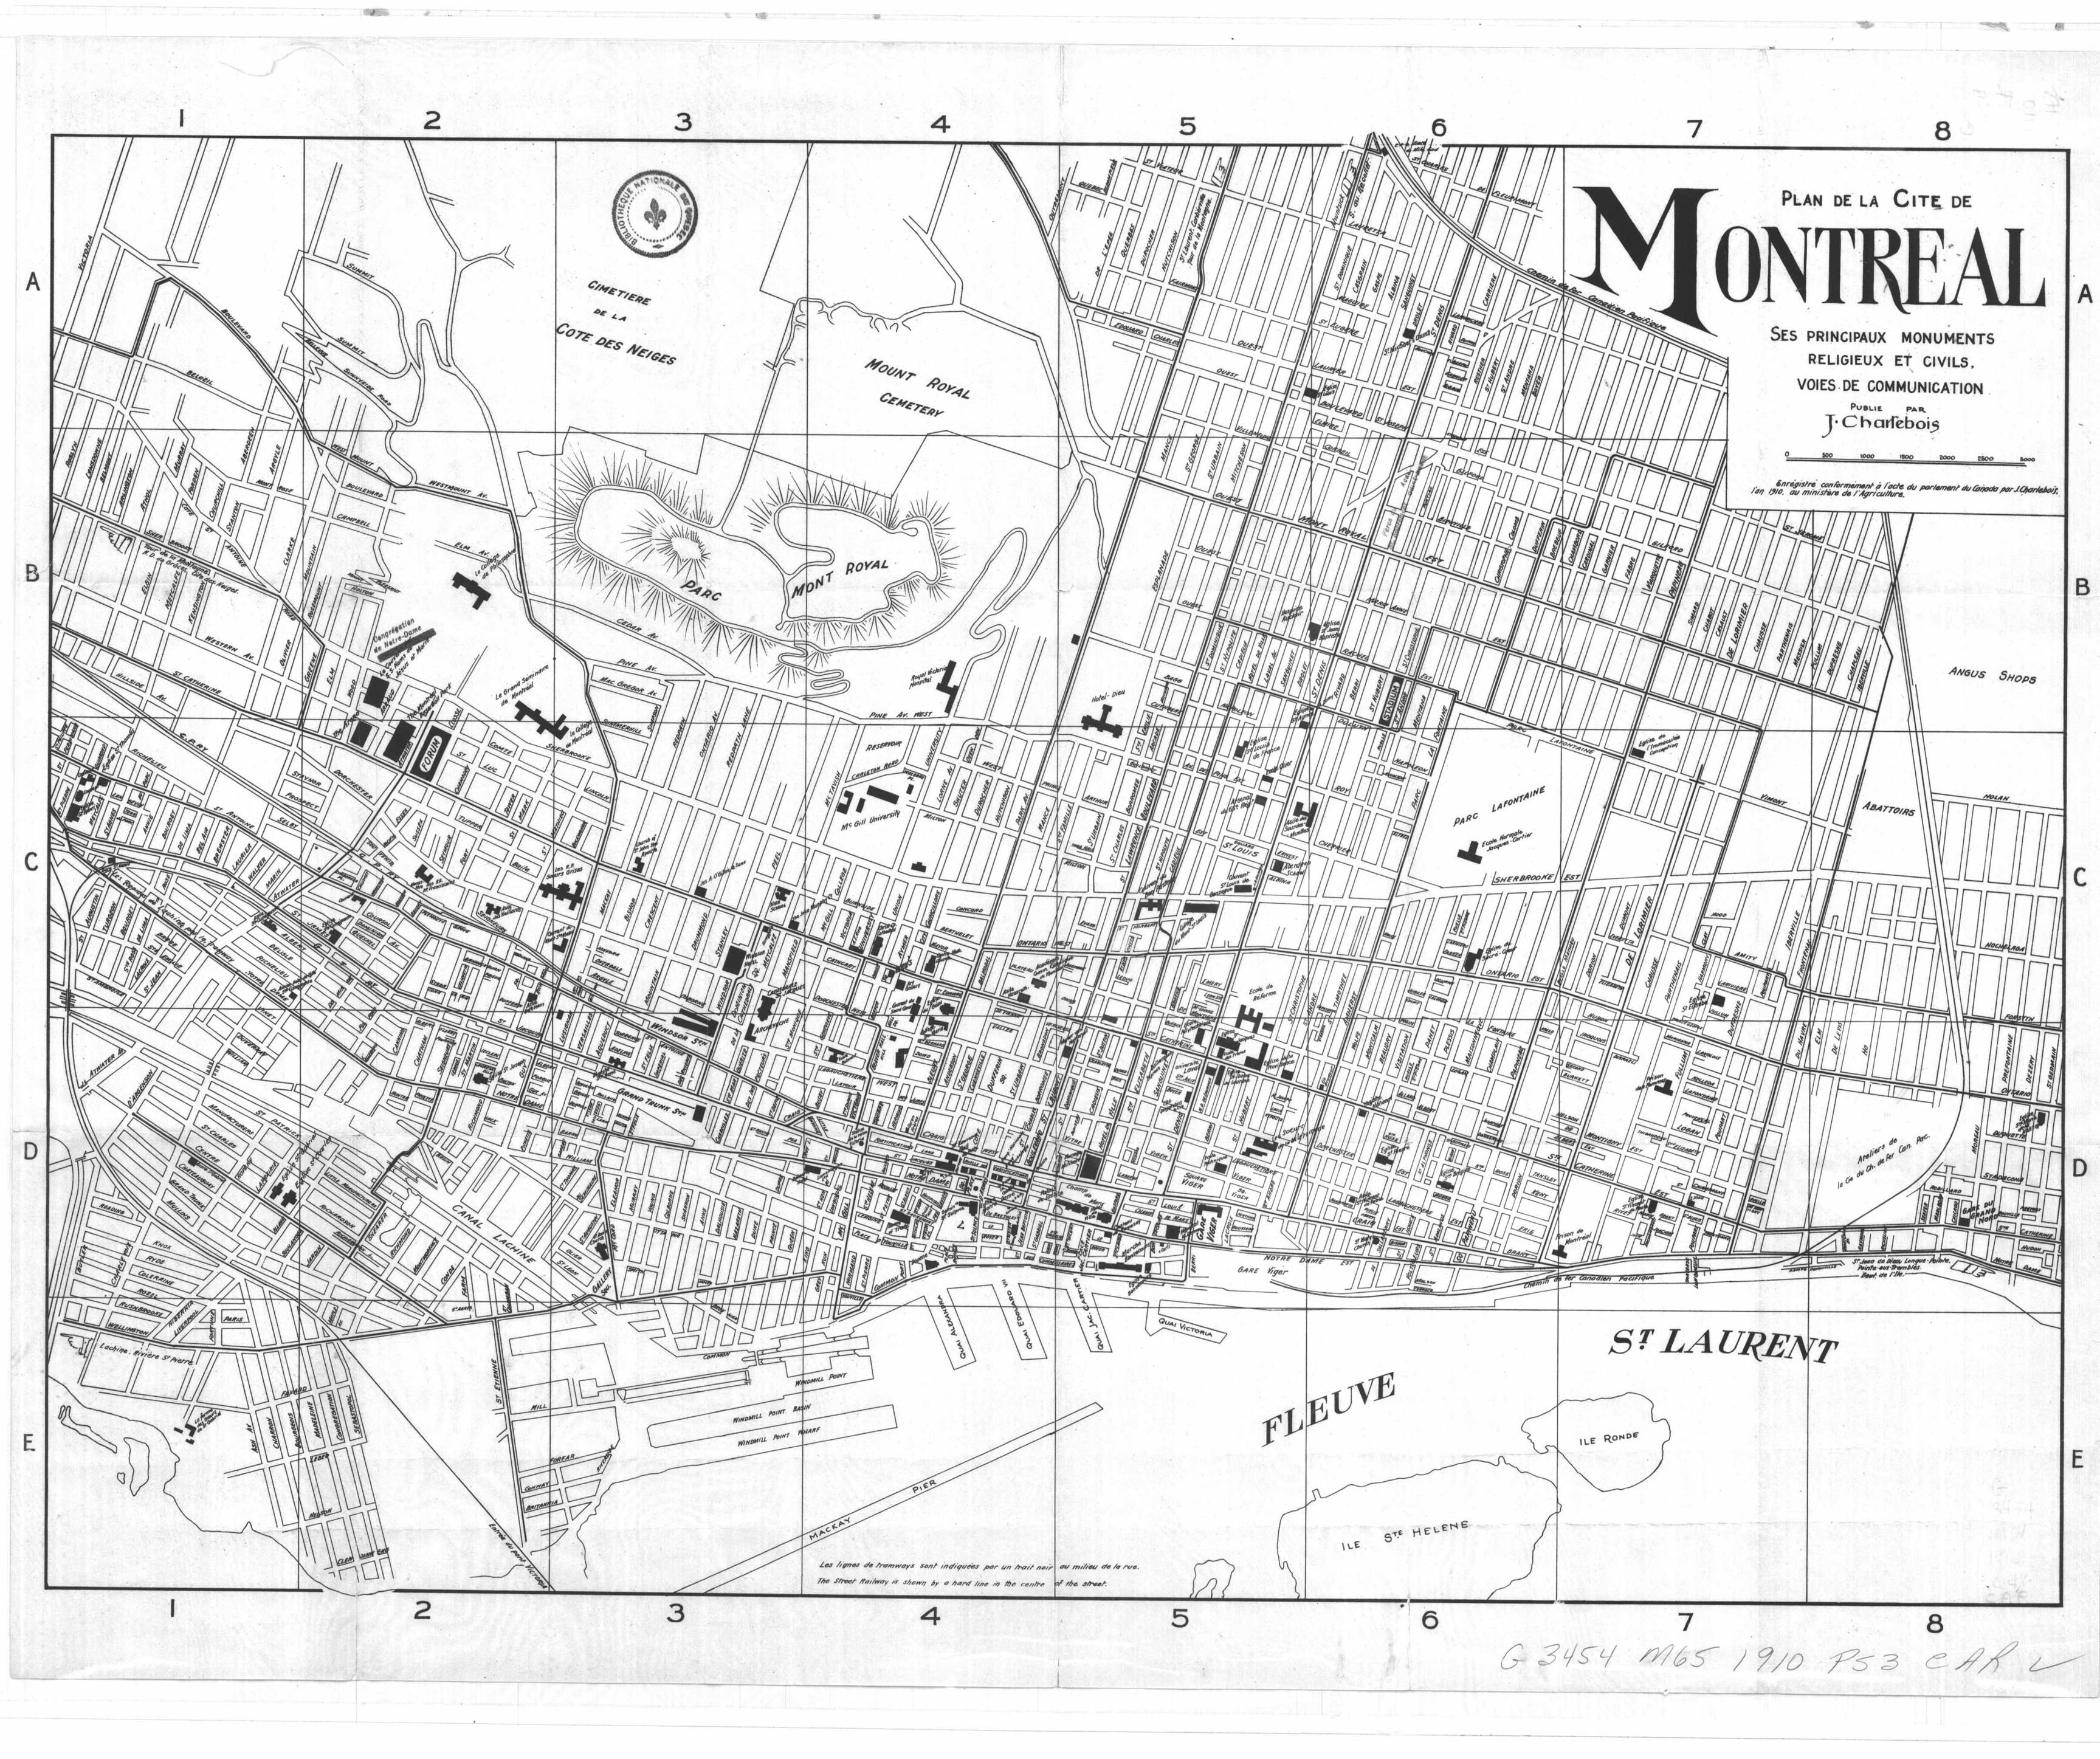 Plan détaillé de la cité de Montréal : ses principaux monuments religieux et civils